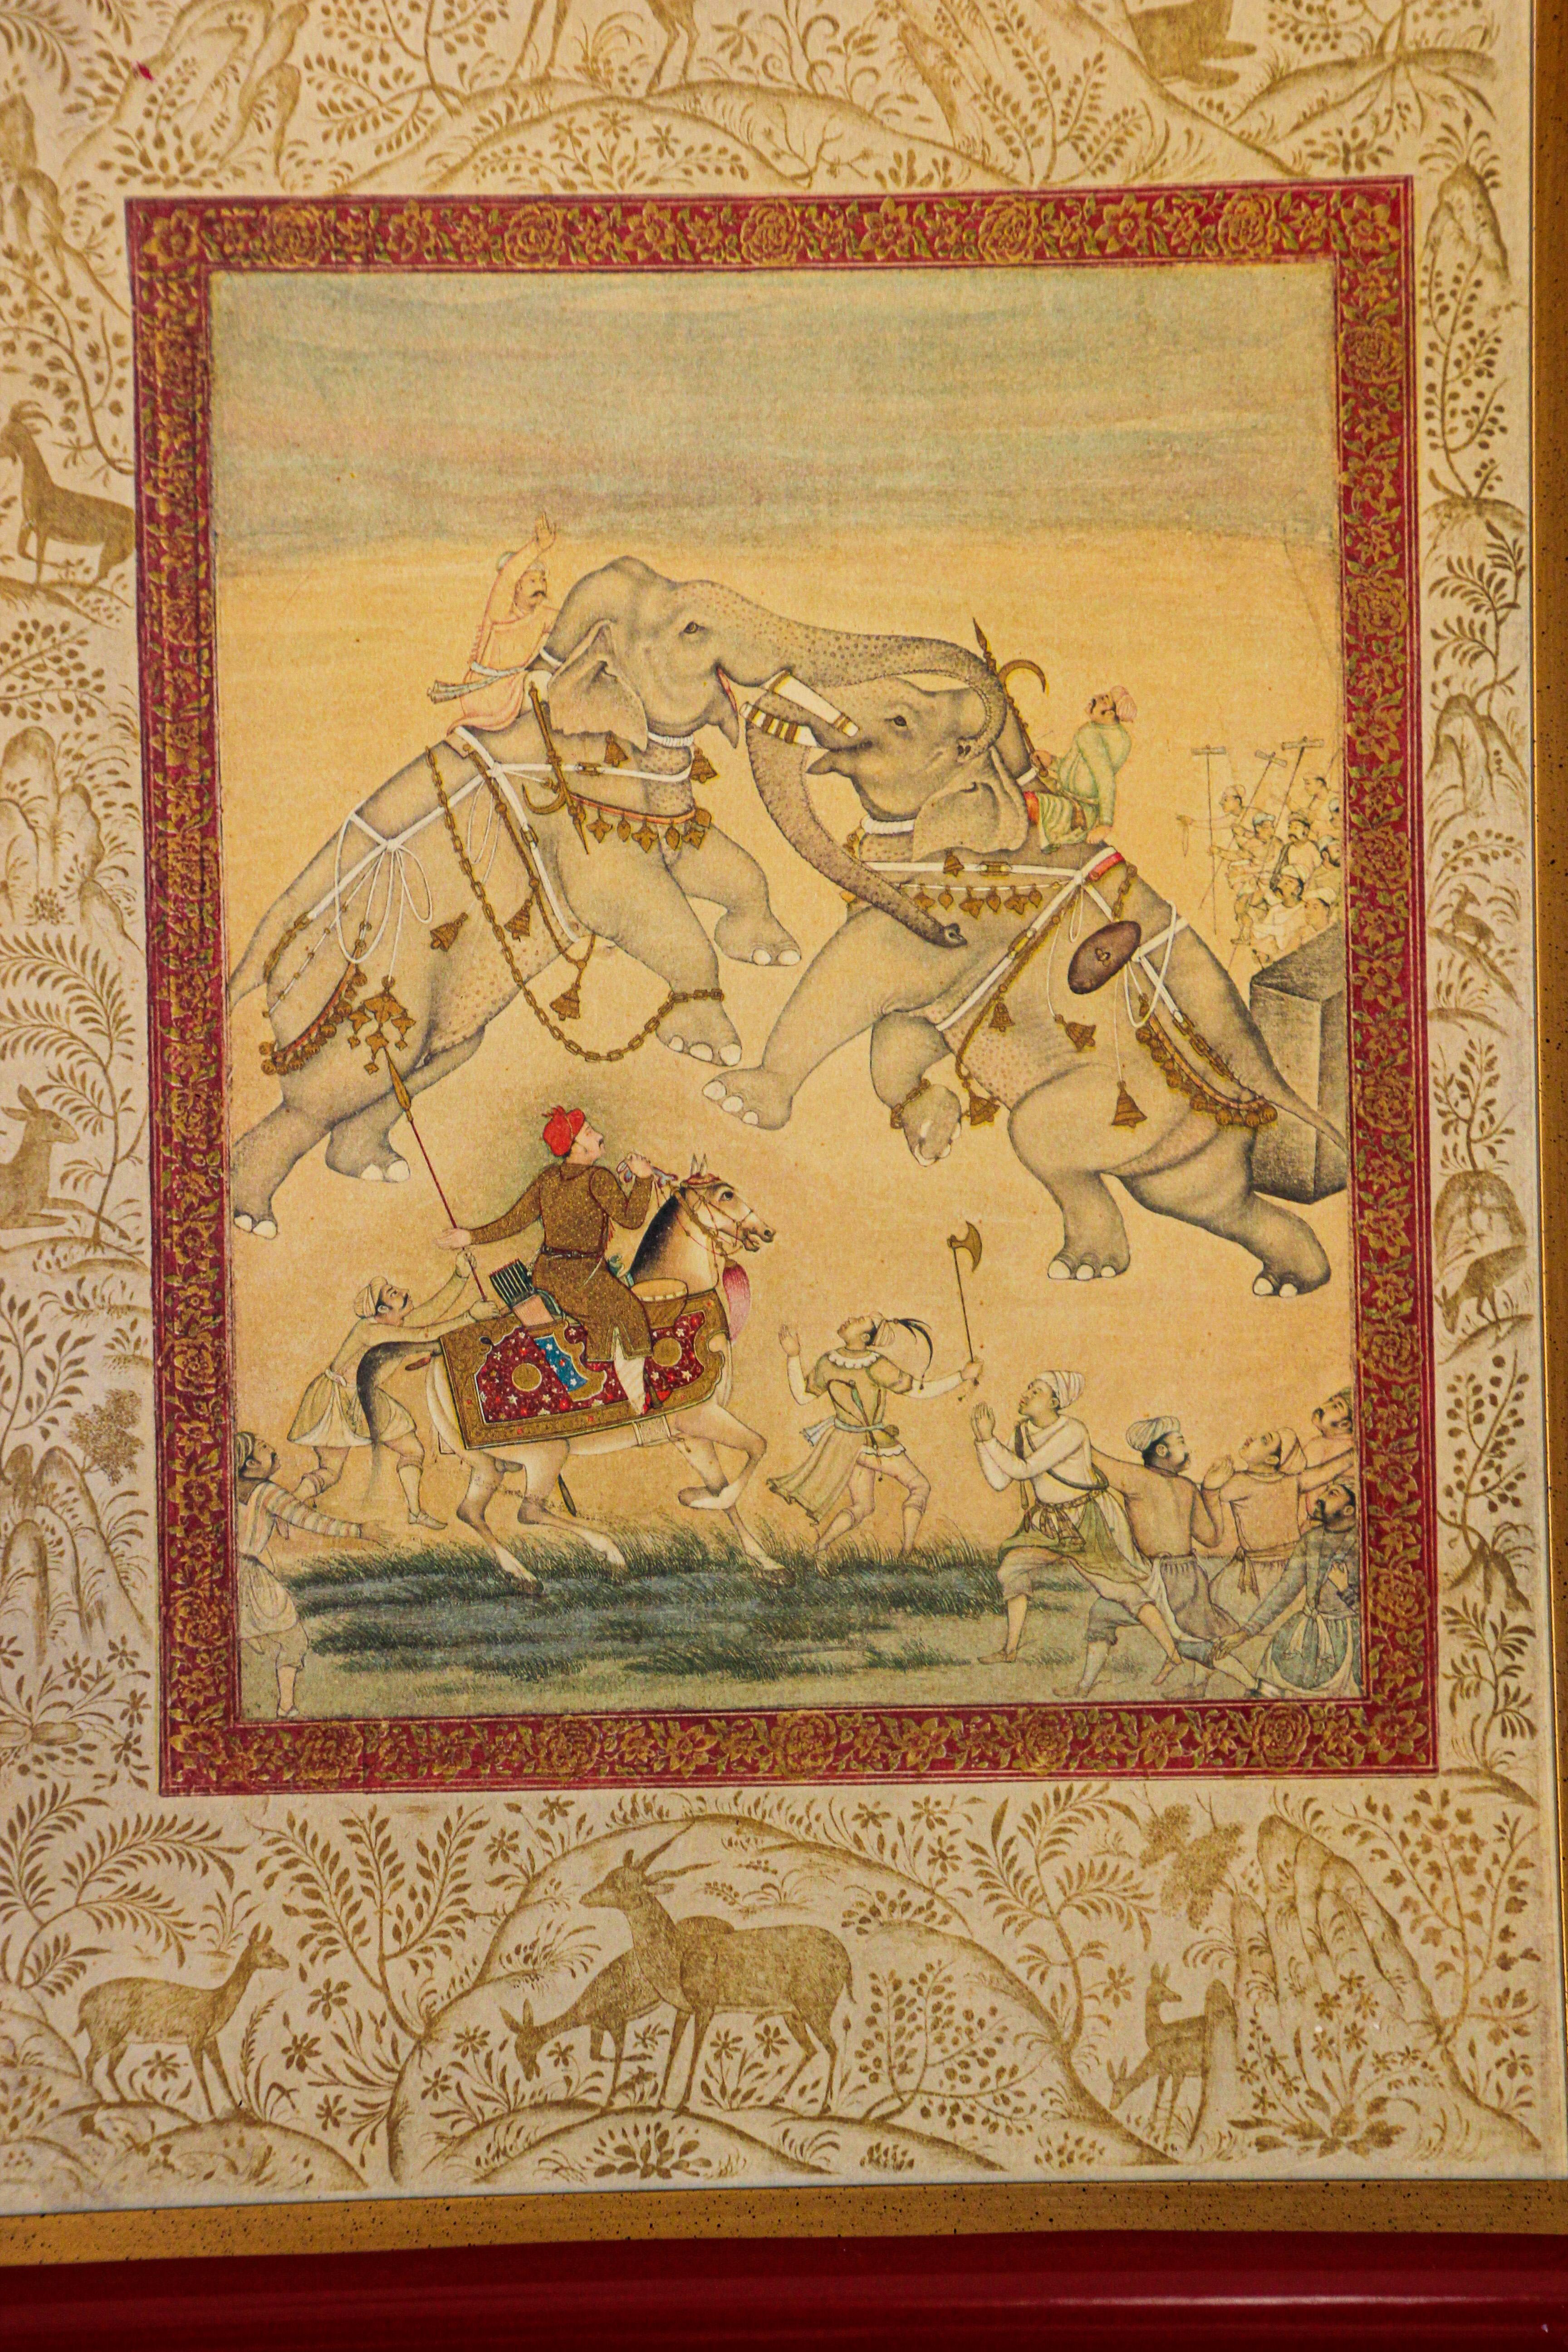 Indischer Druck von Elefanten im Mughal-Stil, indischer Stil (Agra)